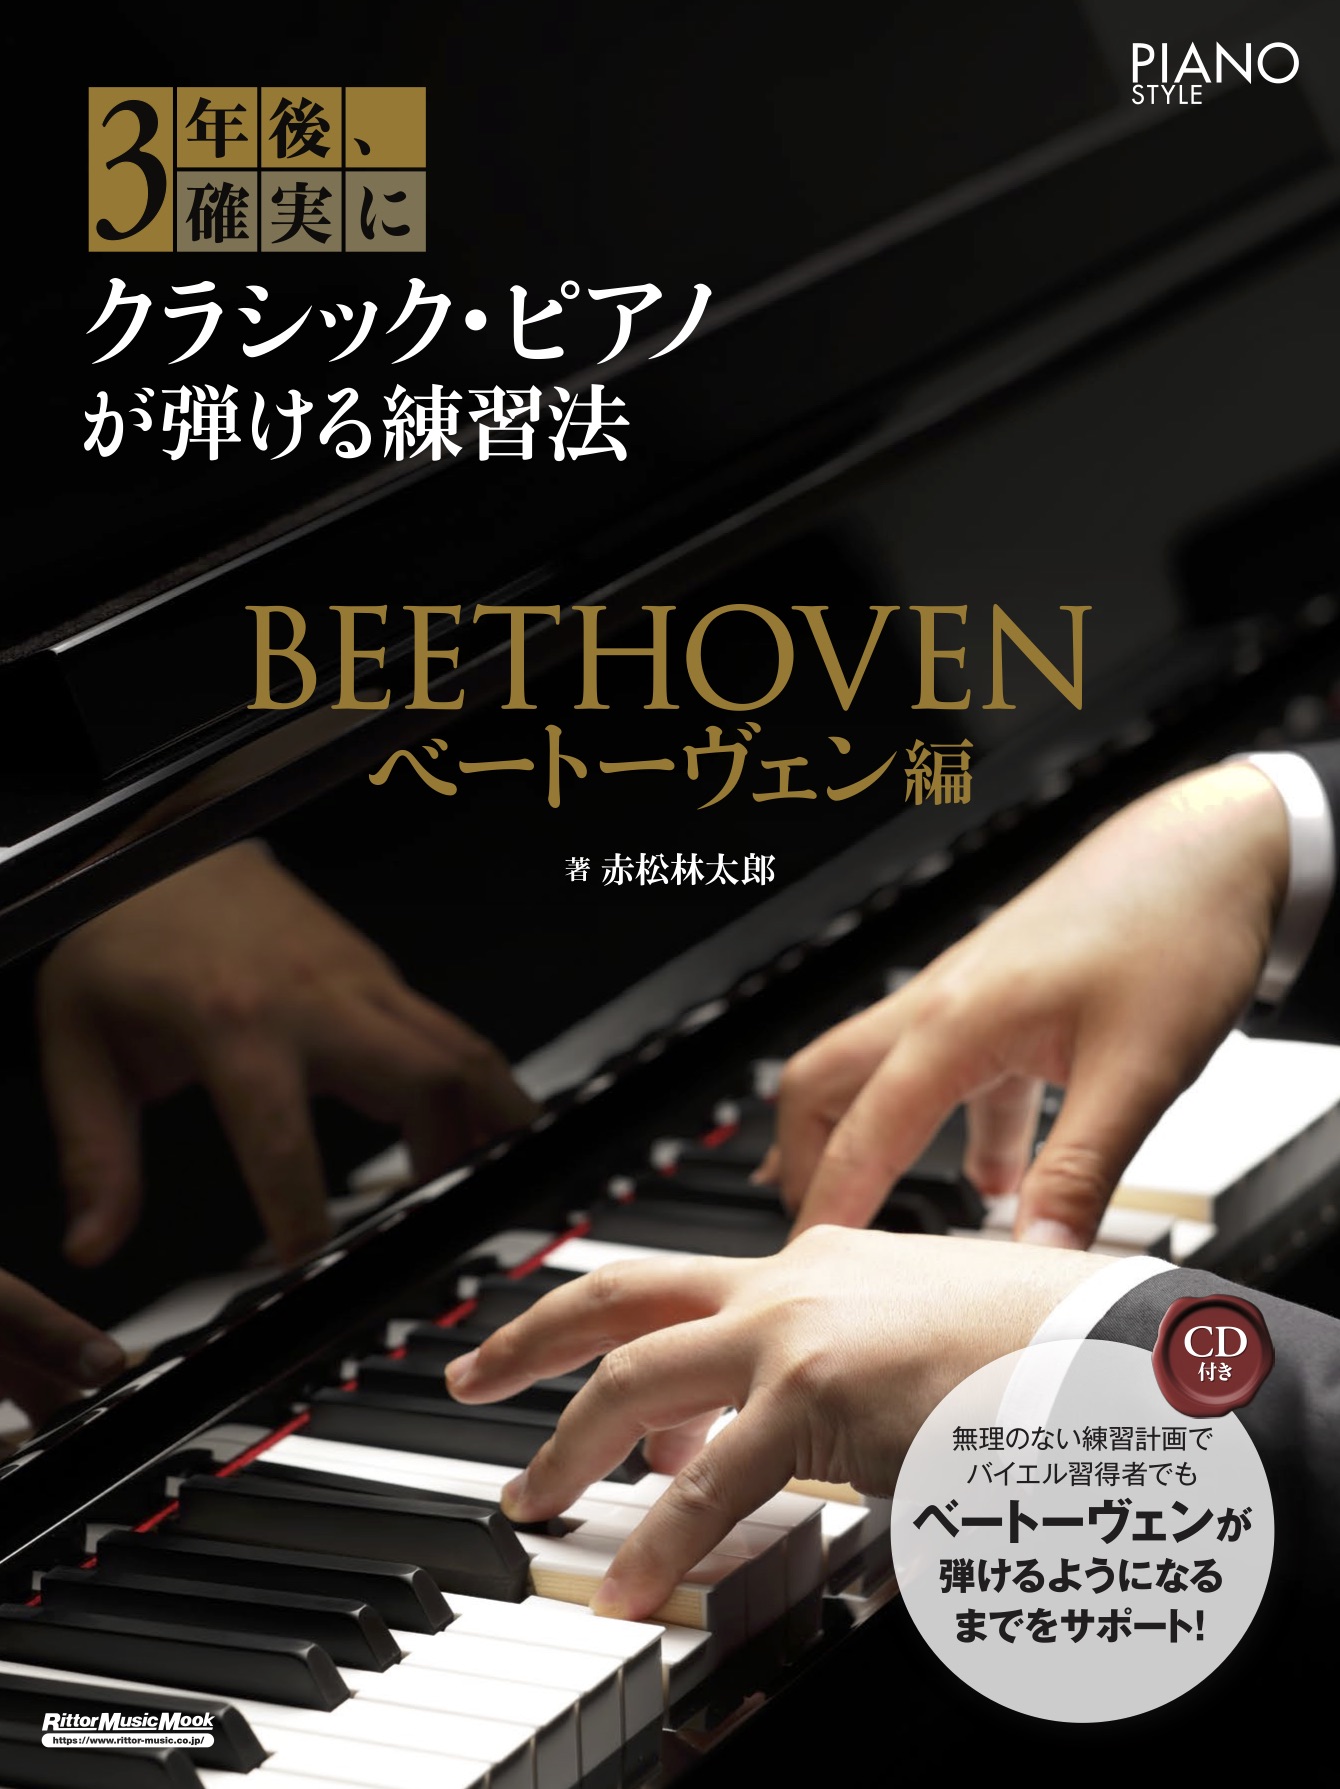 バイエル習得者でもベートーヴェンが弾けるようになるまでをサポート クラシック ピアノが基礎から学べる教則本 3年後 確実にクラシック ピアノが弾ける練習法 ベートーヴェン編 刊行 株式会社インプレスホールディングスのプレスリリース